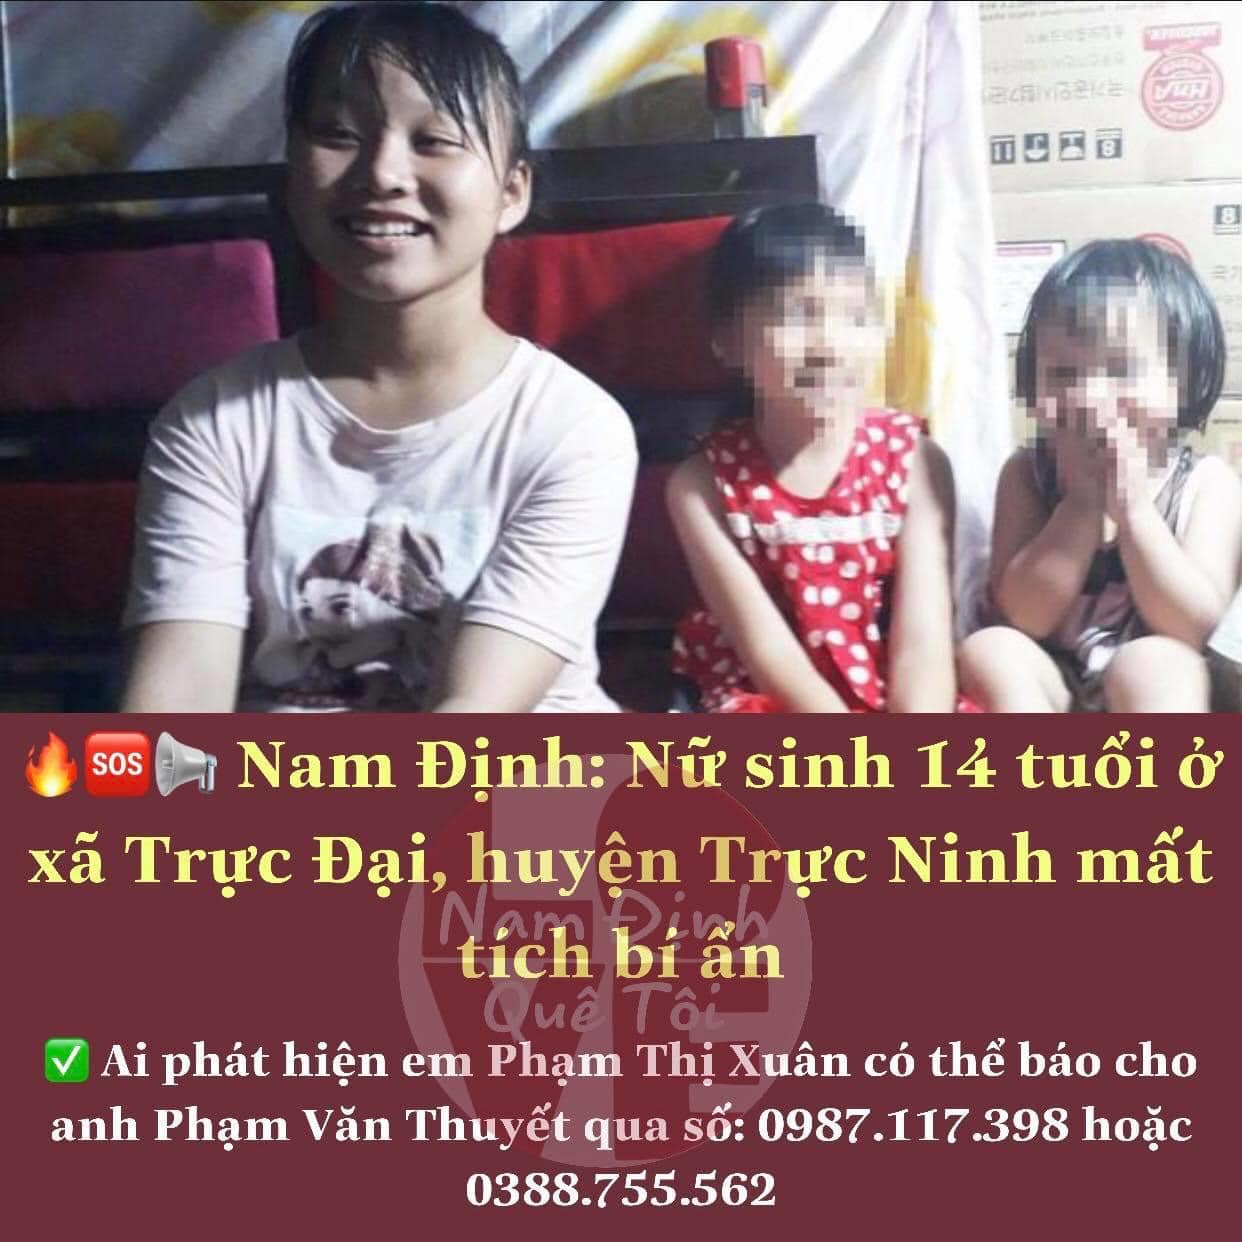 Tìm kiếm thiếu nữ 14 tuổi ở Nam Định mất tích